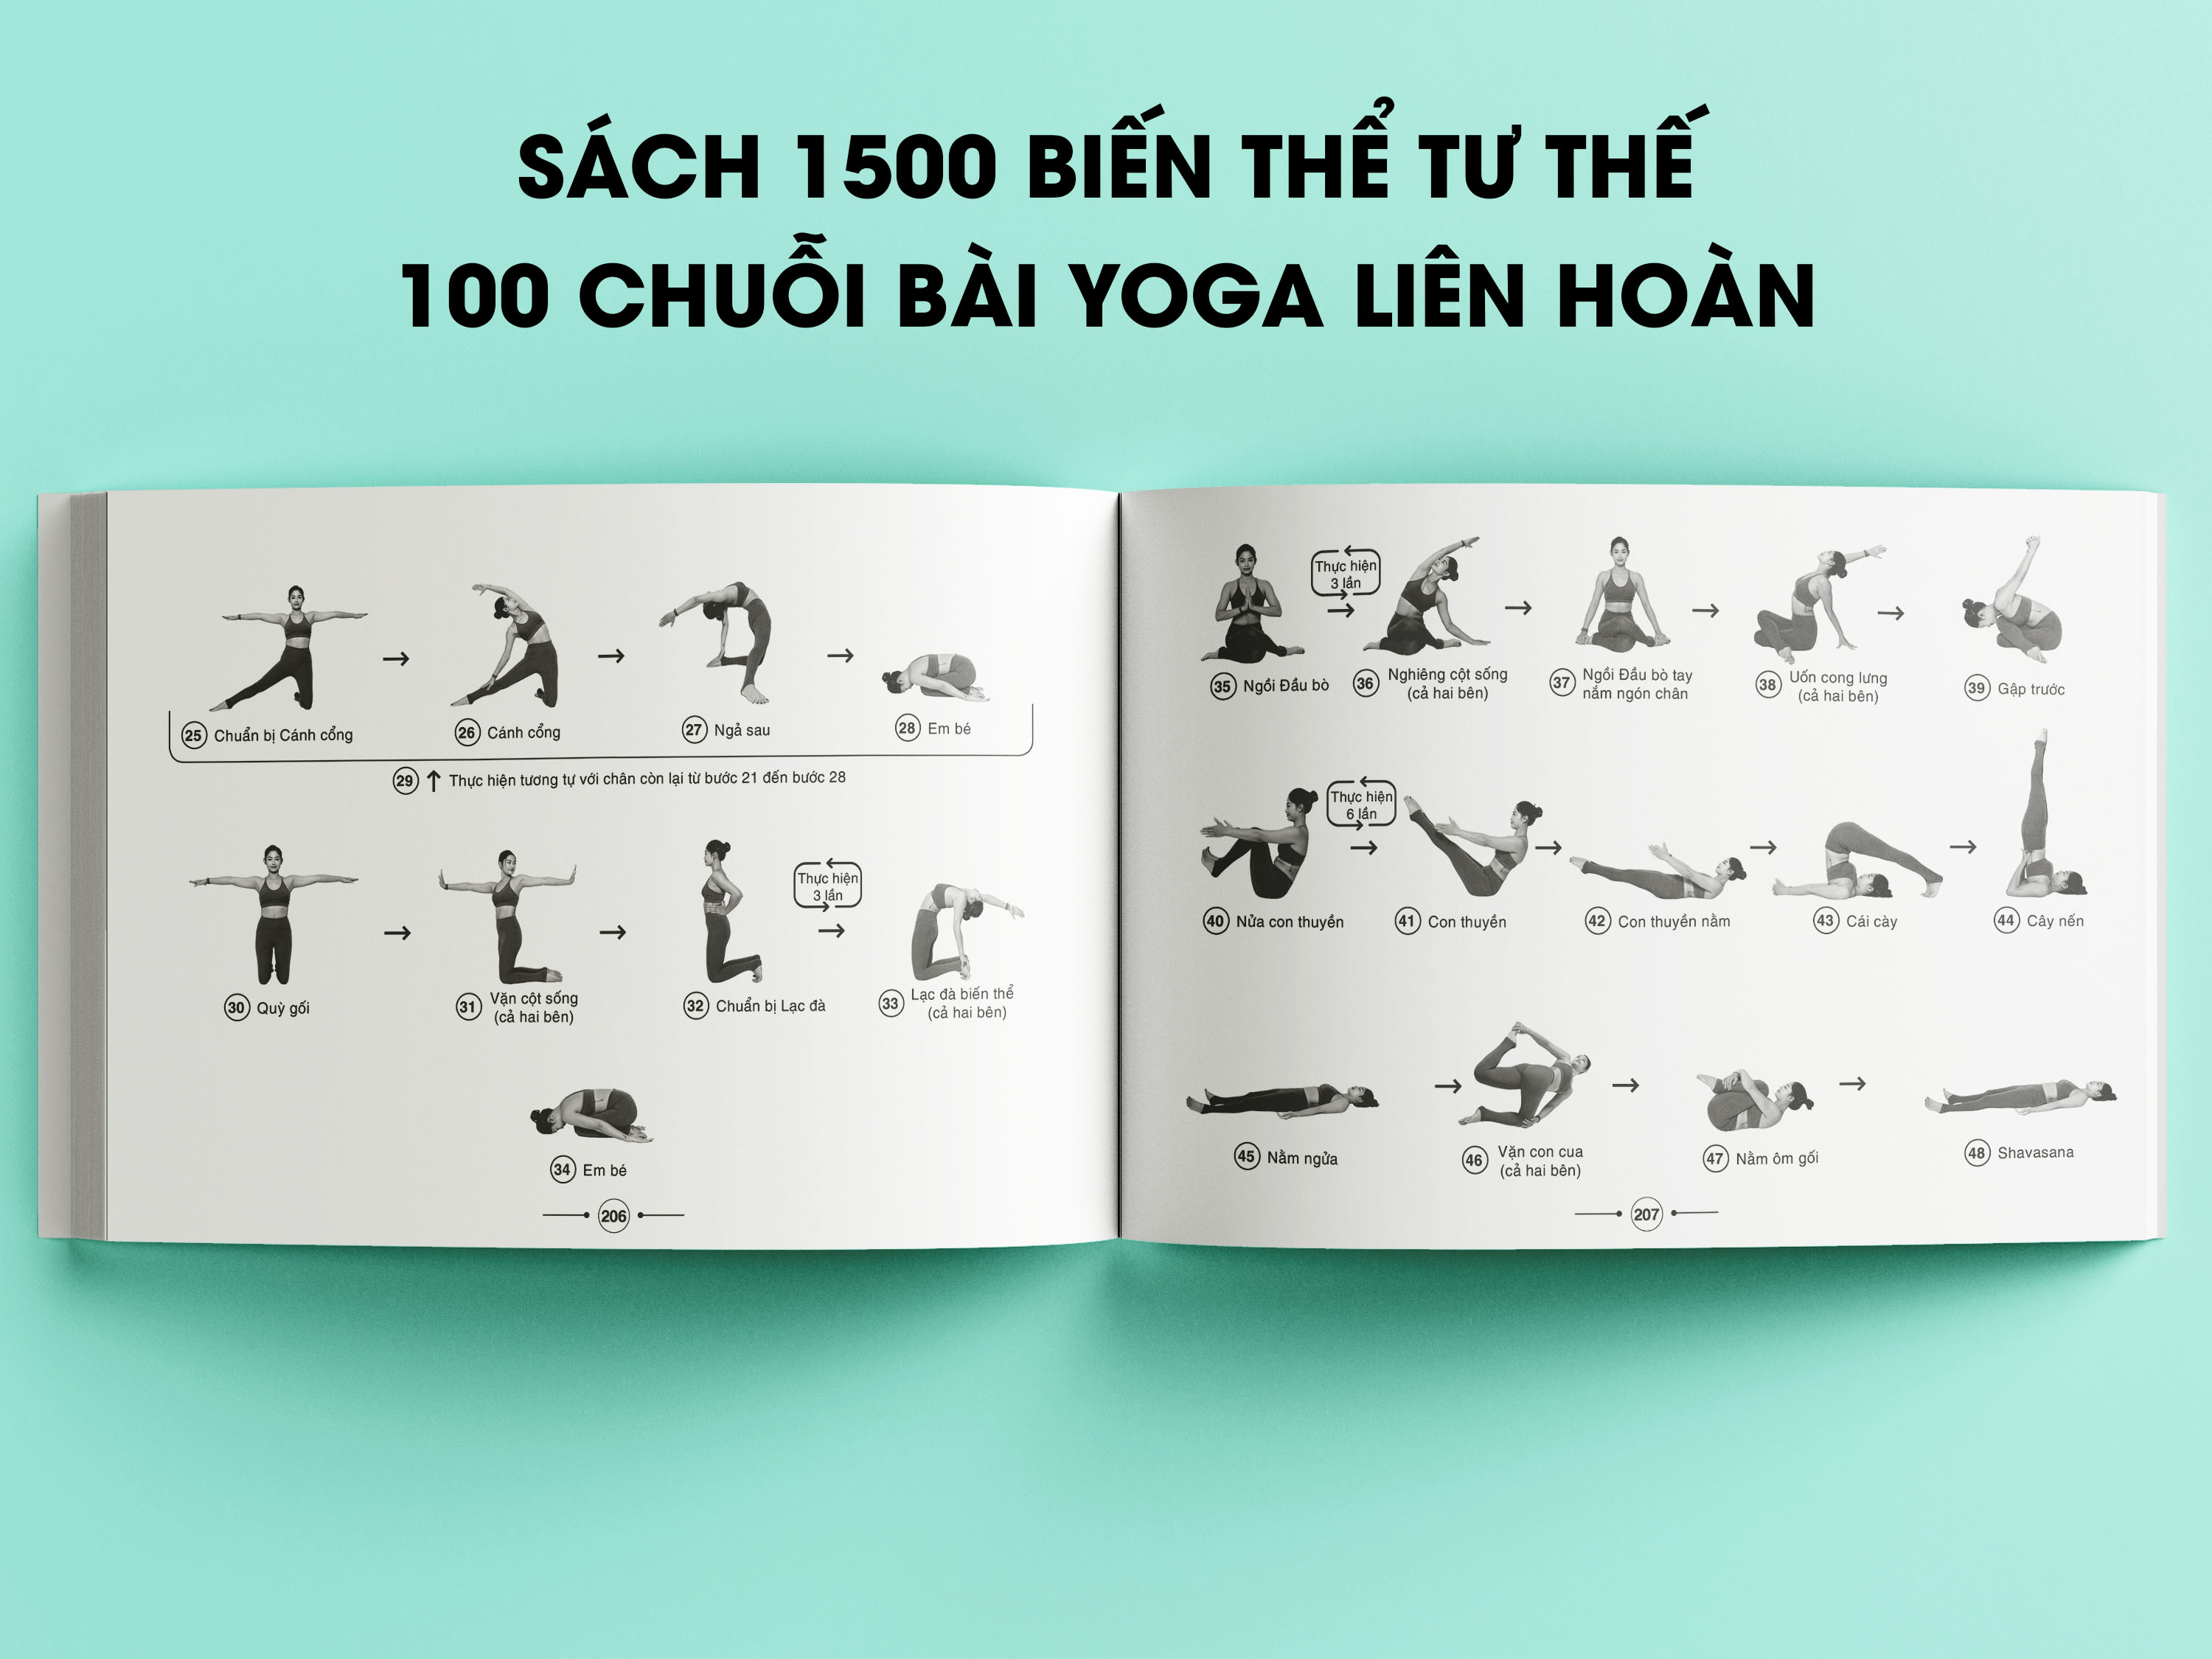 Bộ sách cho Giáo viên Yoga cơ bản: Hướng dẫn khởi động &amp; 200 tư thế Yoga + Giáo án giảng dạy Yoga trị liệu + Hệ thống 1500 biến thể &amp; 100 chuỗi bài Yoga liên hoàn + Những bài dẫn thiền hay dành cho giáo viên Yoga